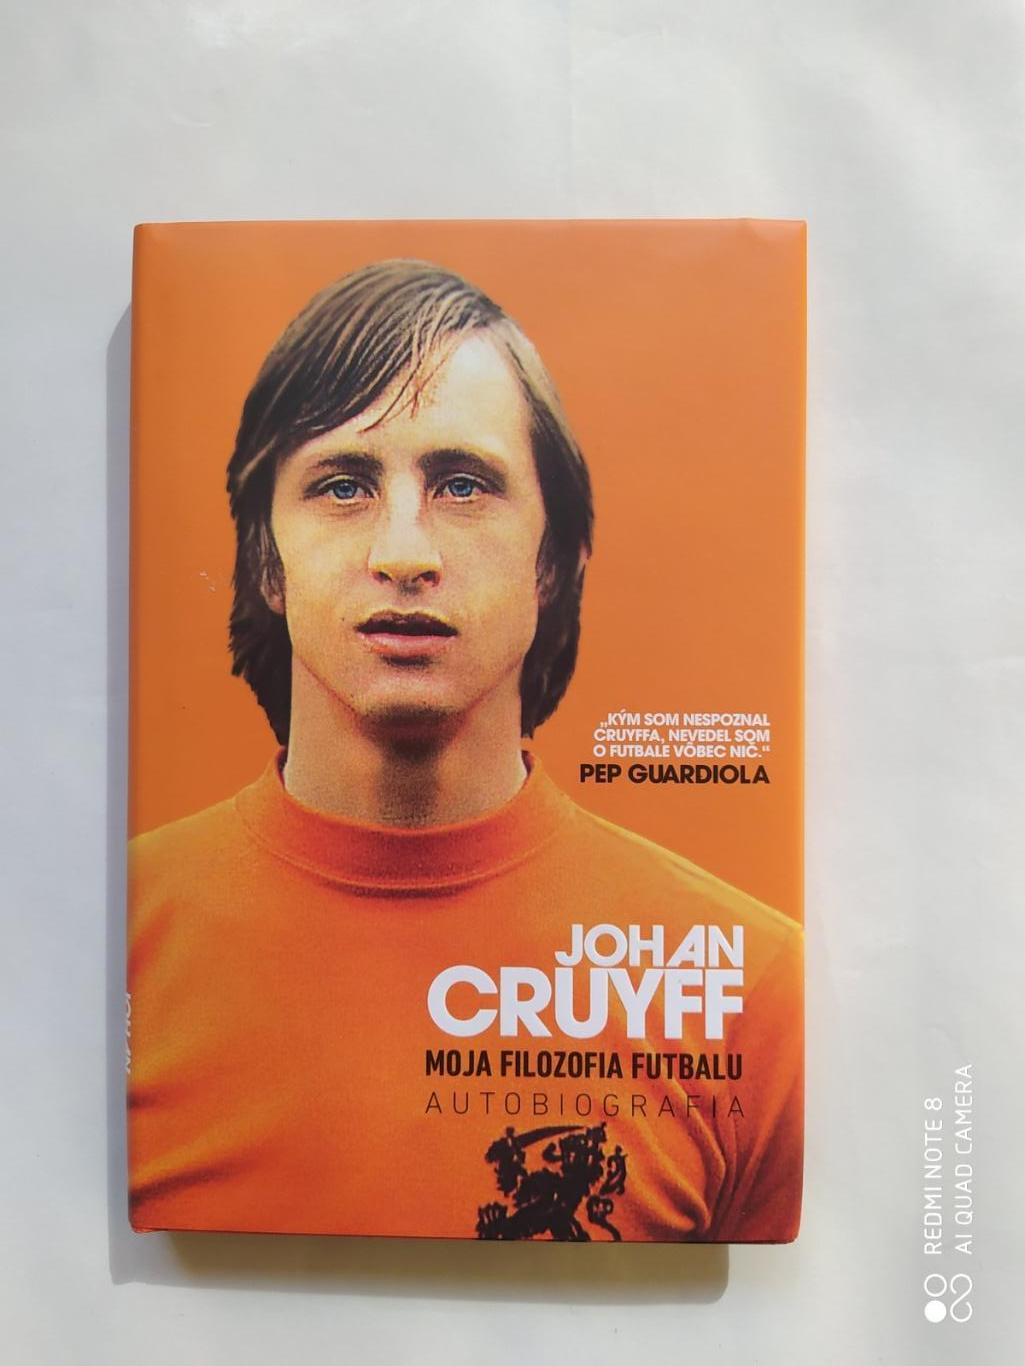 Johan Cruyff Autobiografia Йохан Кройфф. Моя жизнь Автобиография 2017 г.